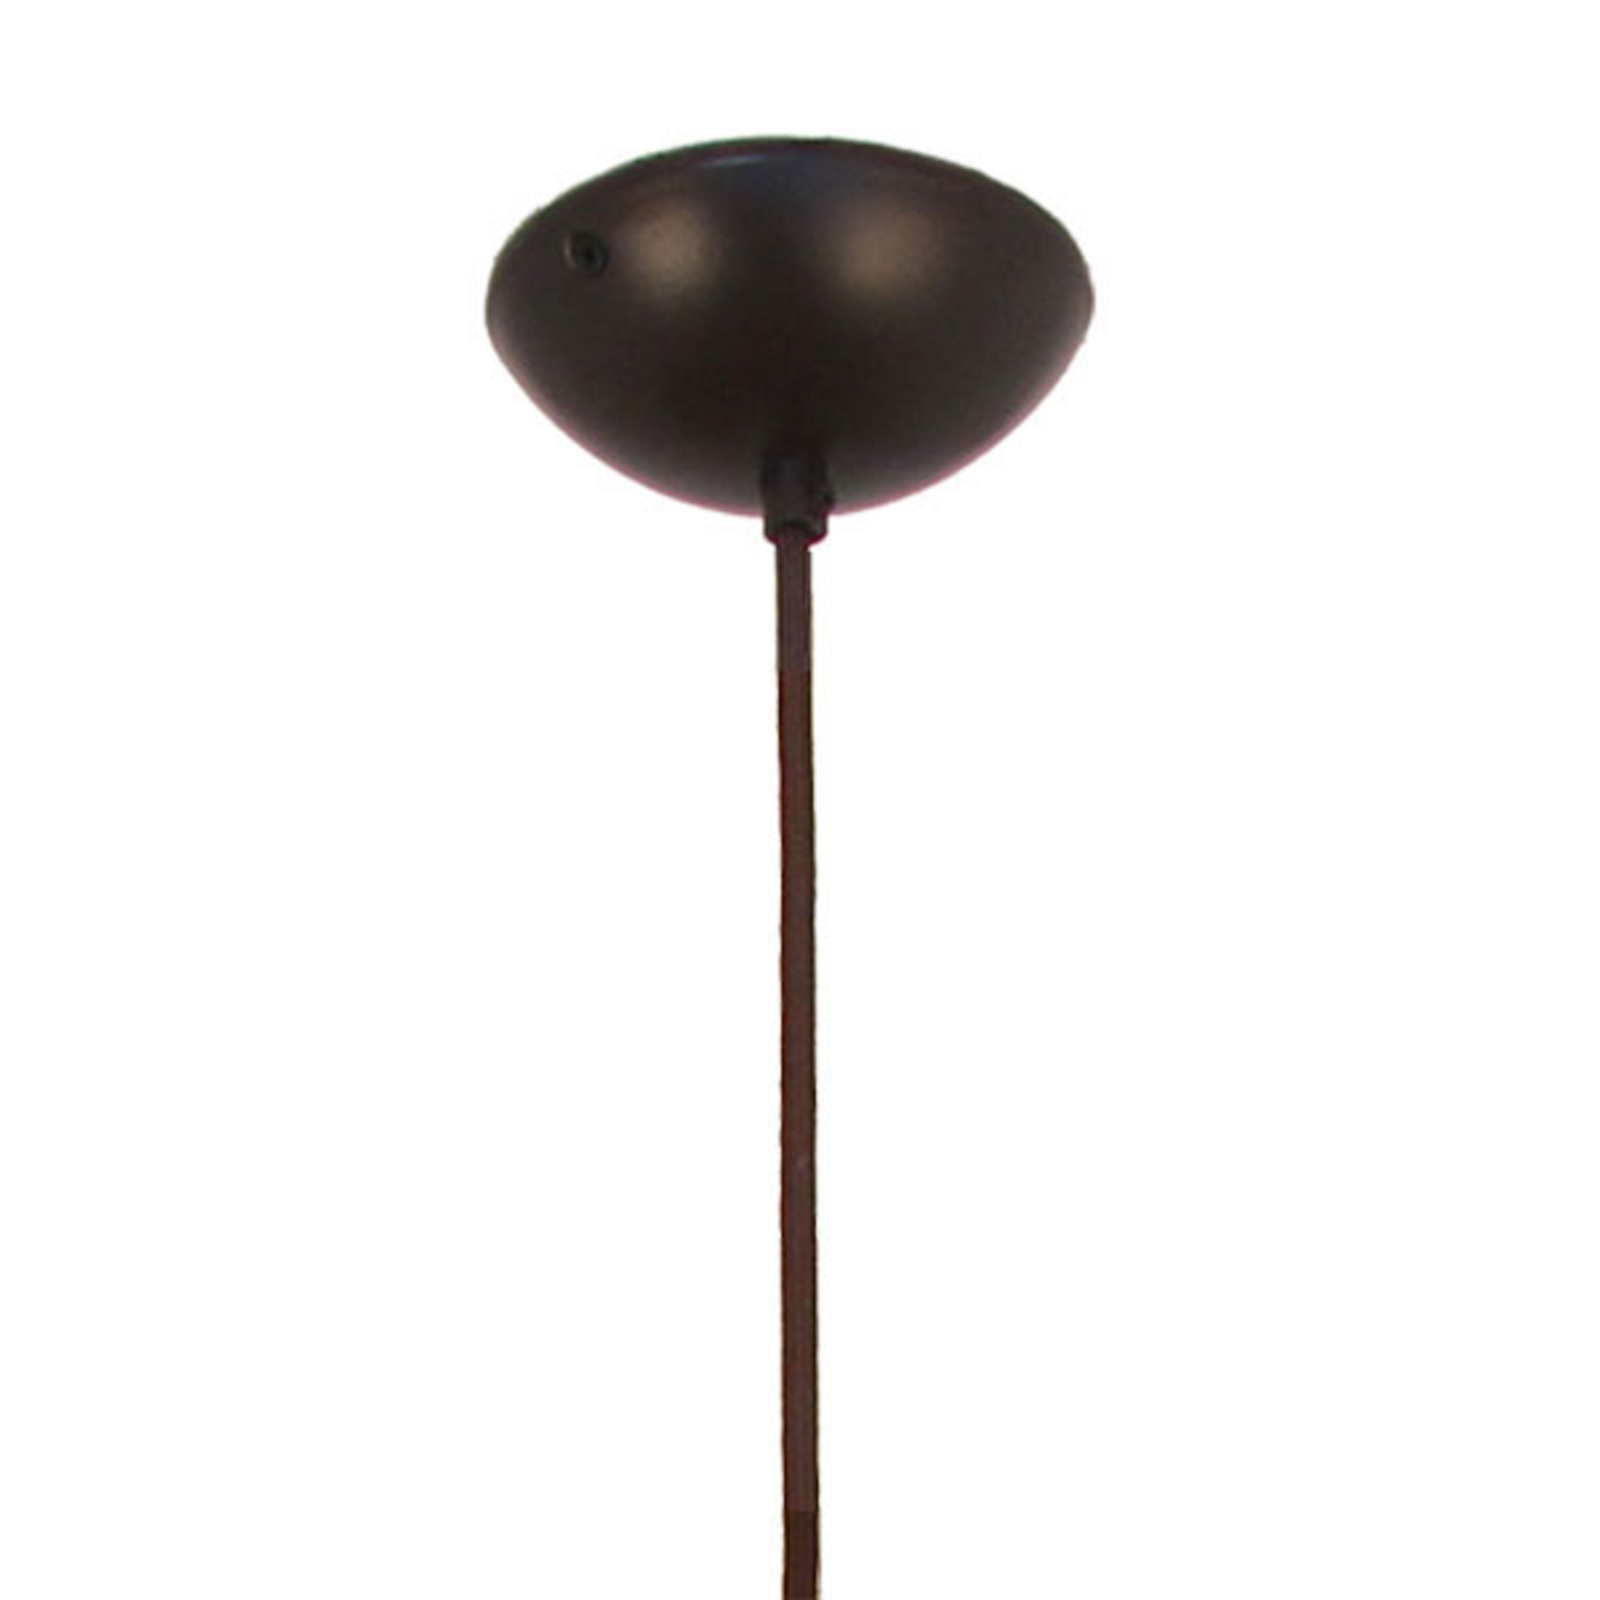 Menzel Solo lámpara colgante Cebolla 16cm